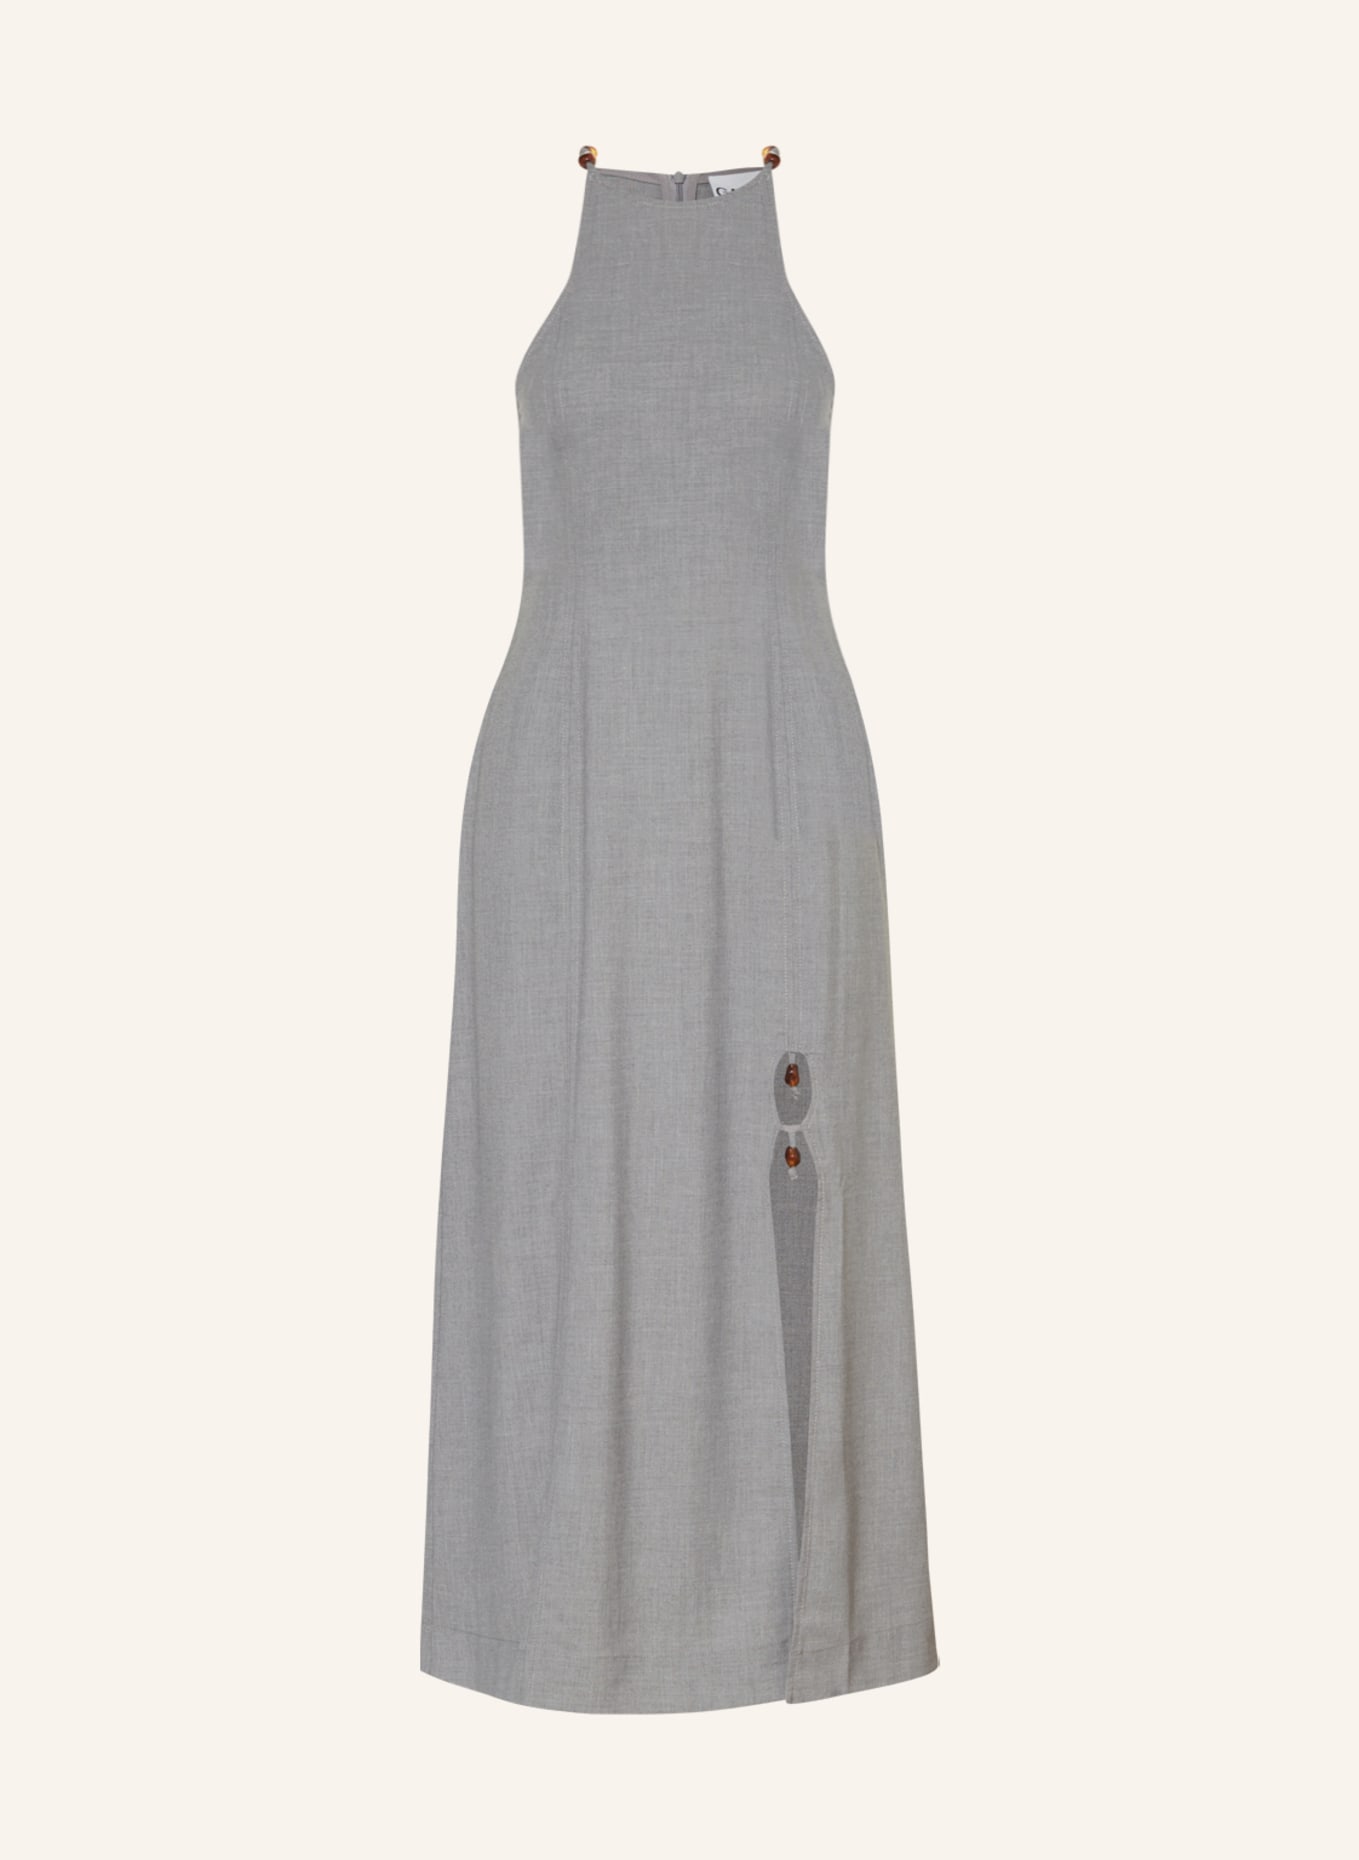 GANNI Kleid DRAPEY mit Schmucksteinen, Farbe: GRAU (Bild 1)